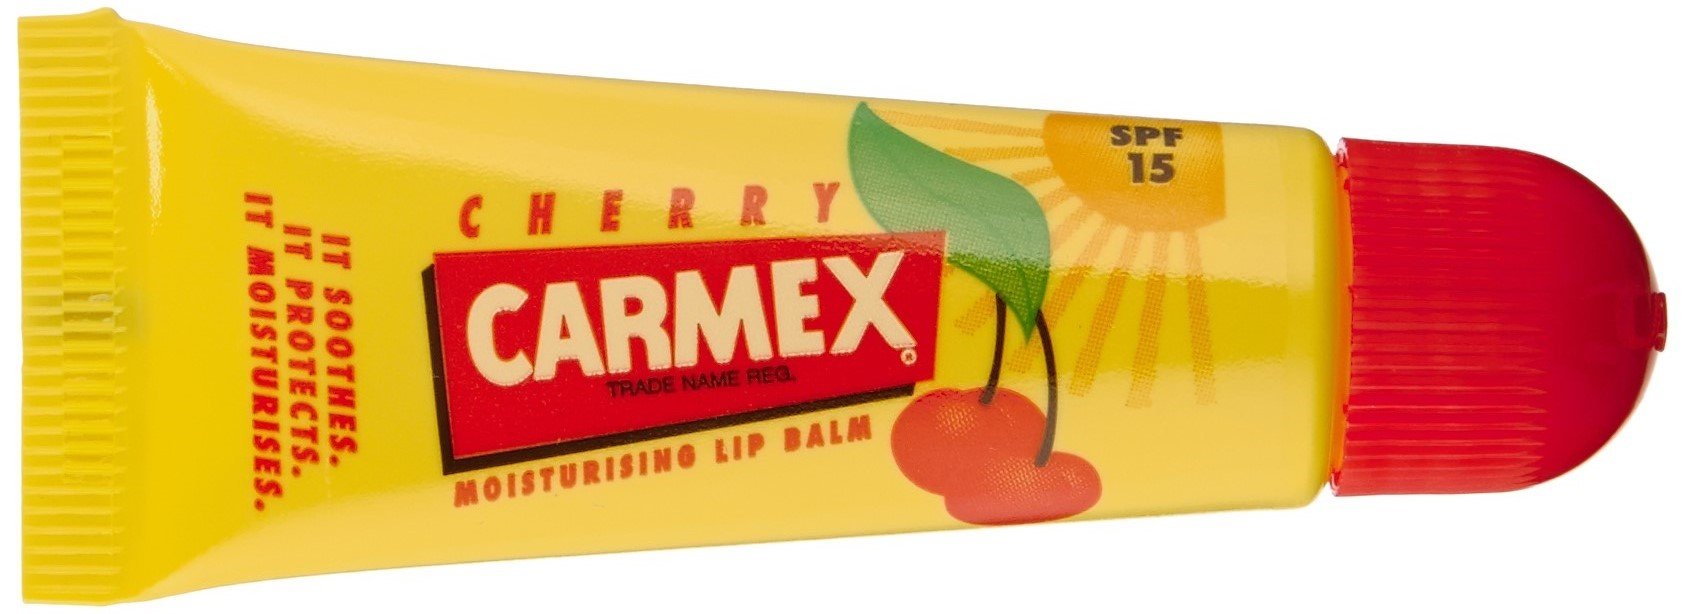 Carmex Cherry Lippenbalsam Tube, 12er Pack (12 x 10 g)